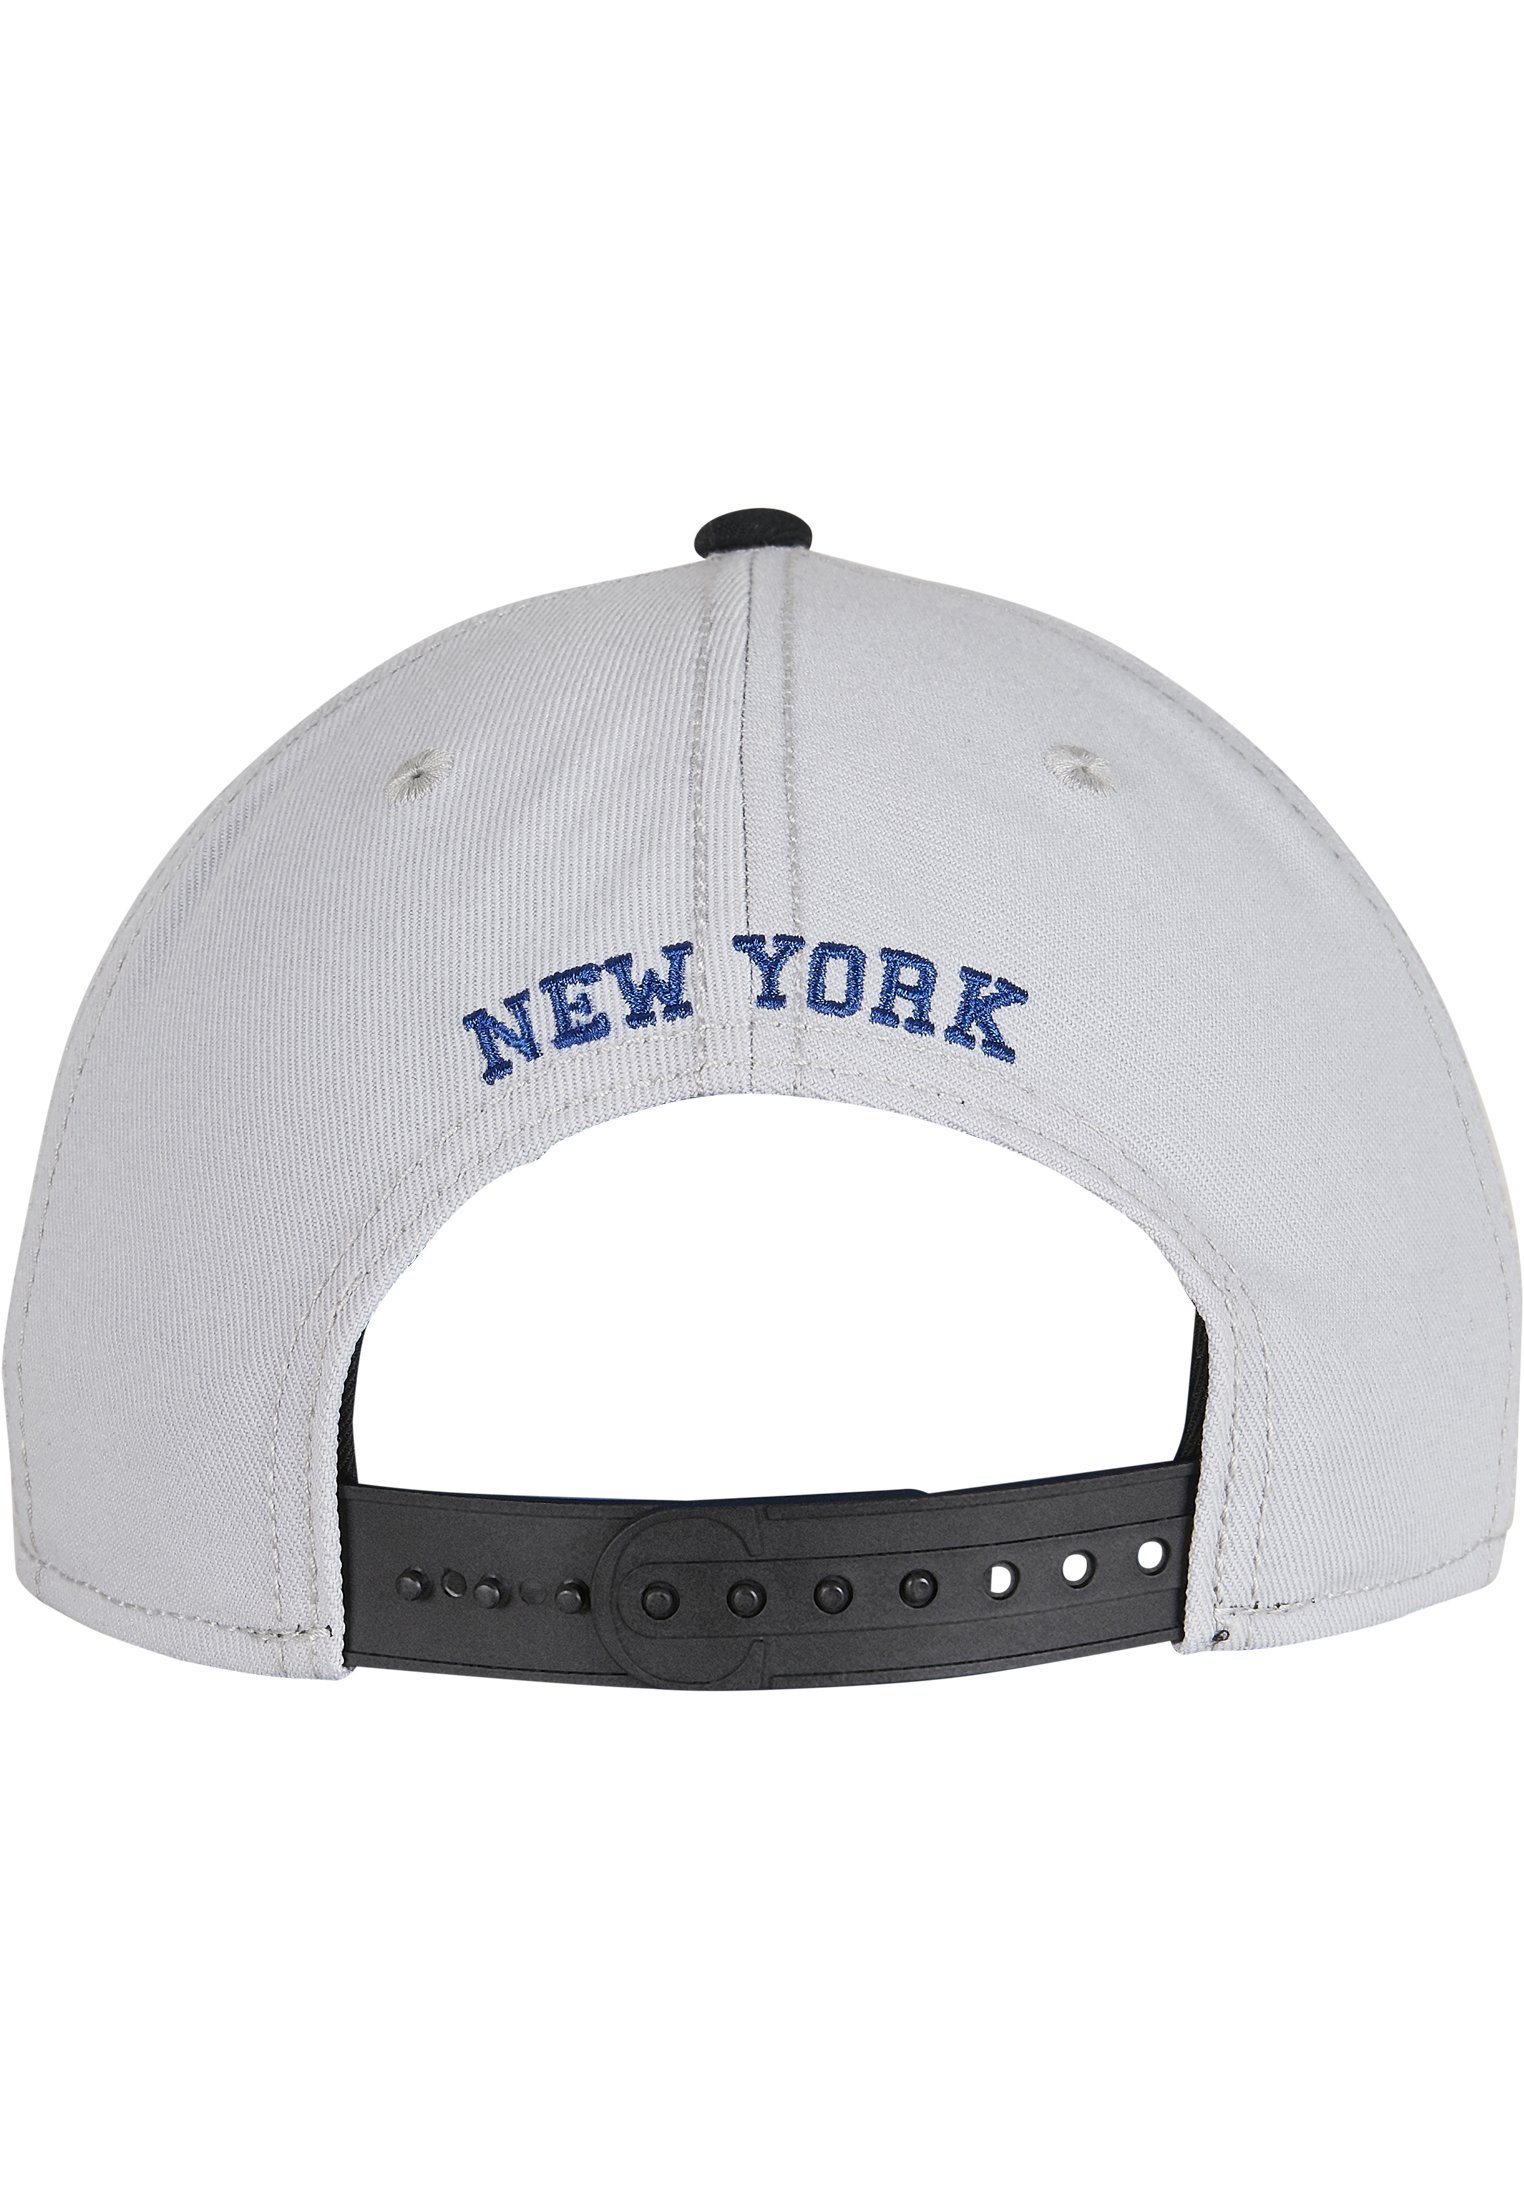 C&S WL NY NY Snapback grey/mc one size